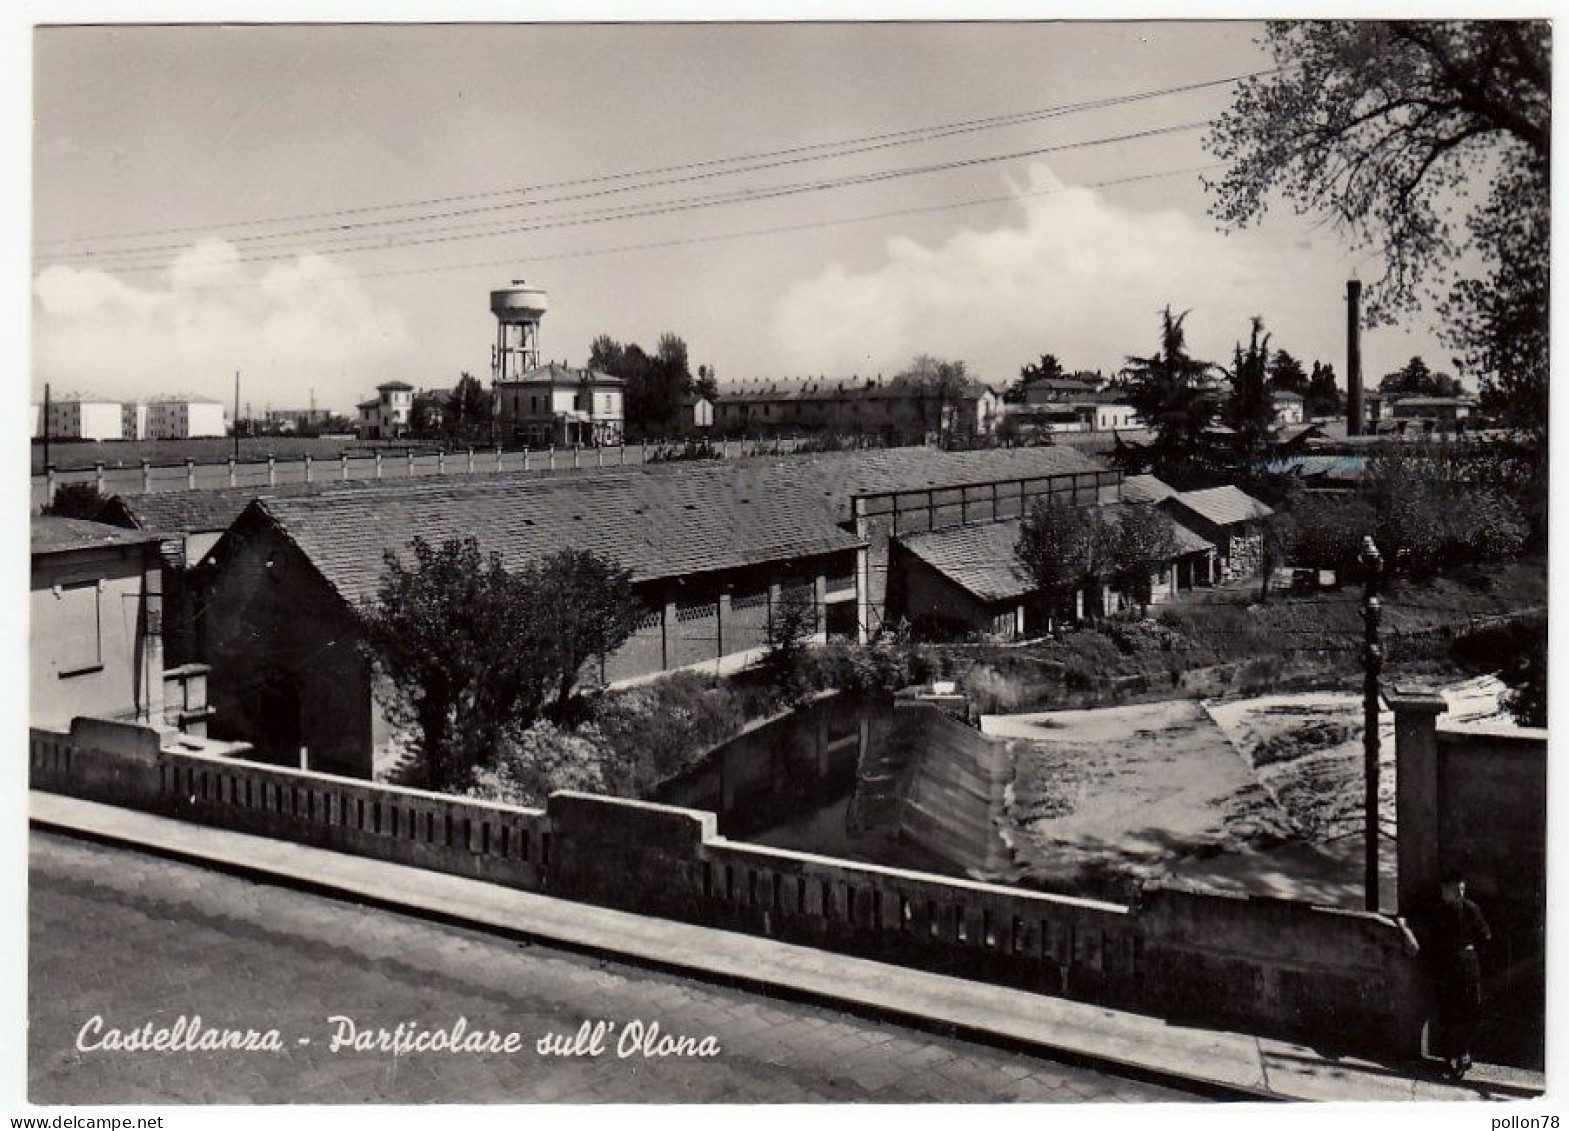 CASTELLANZA - PARTICOLARE SULL'OLONA - VARESE - 1955 - Varese